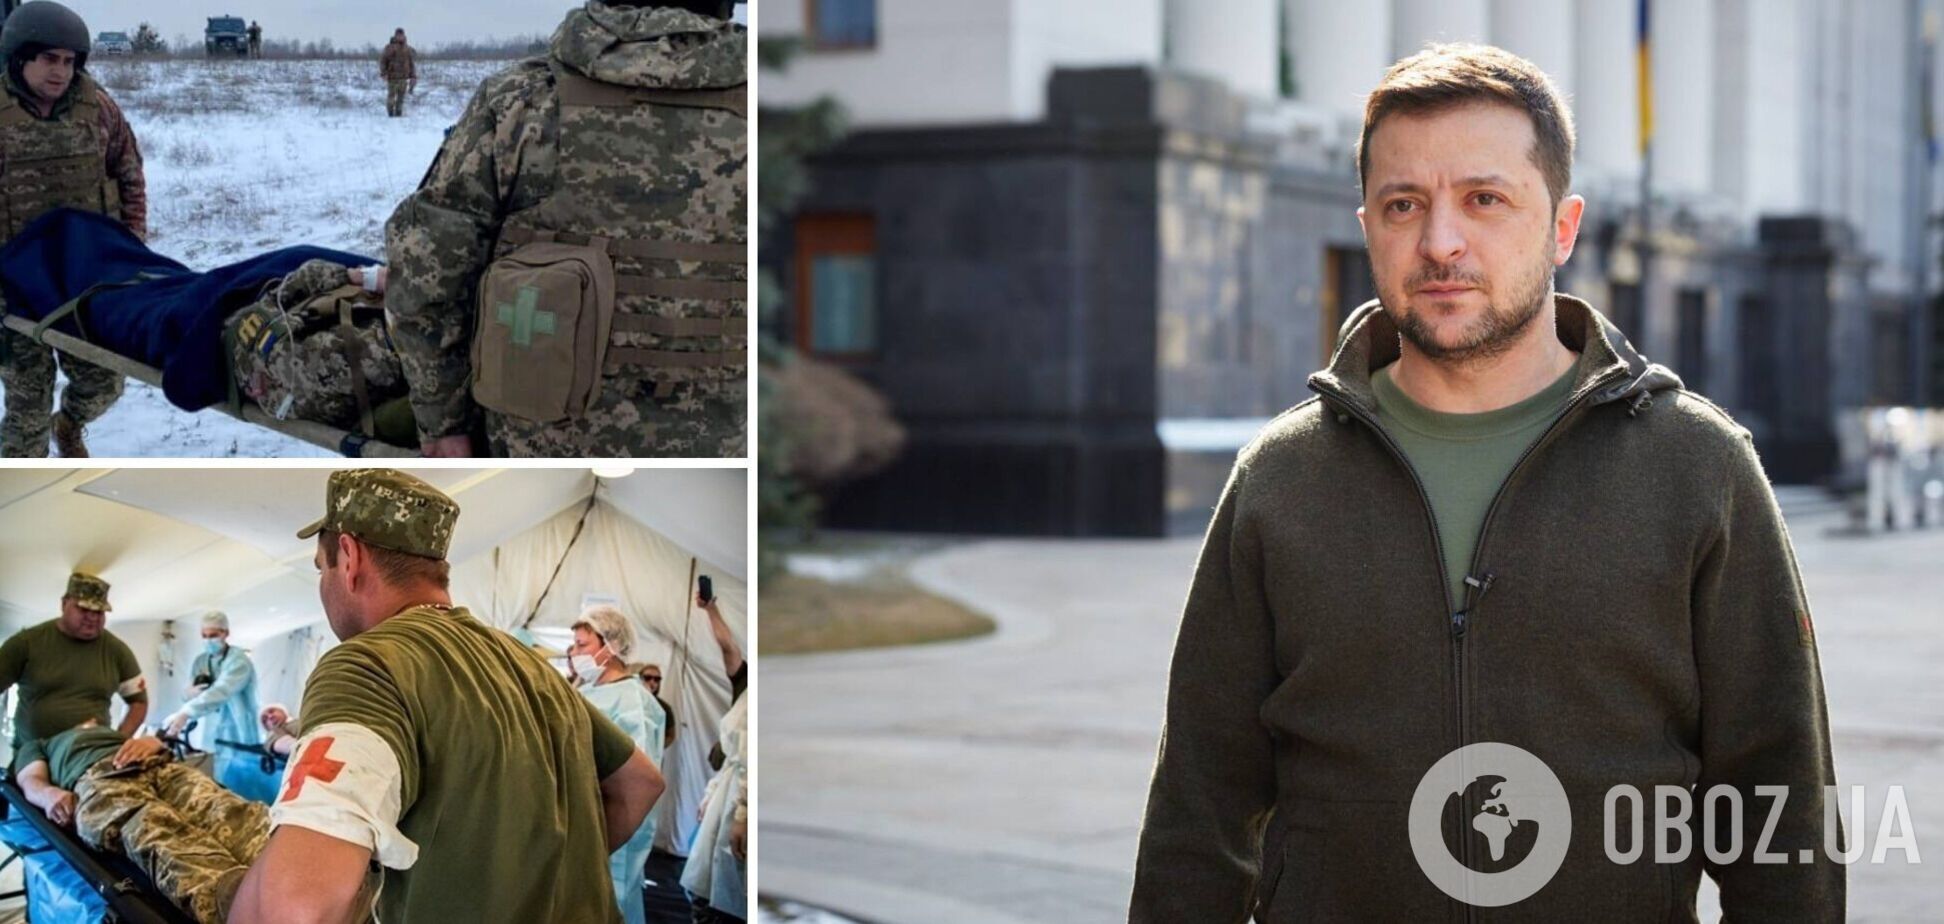 'Лучшим подарком к выписке будет победа': Зеленский посетил раненых защитников в госпитале. Видео